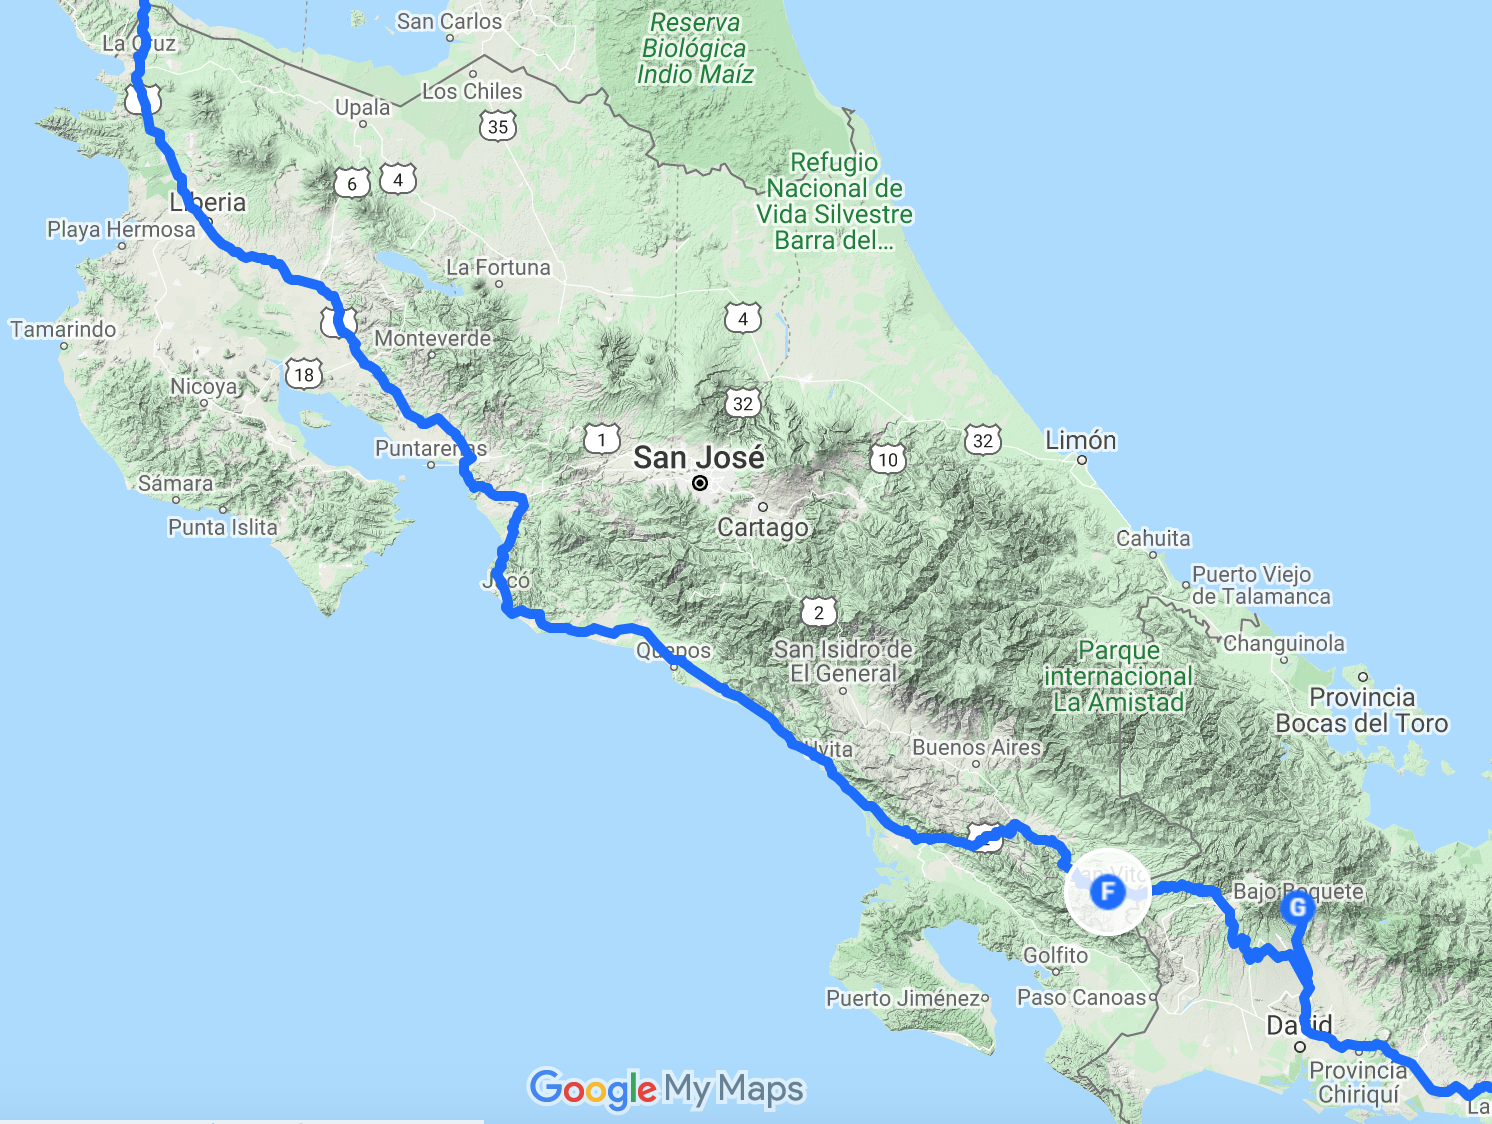 The route in Costa Rica